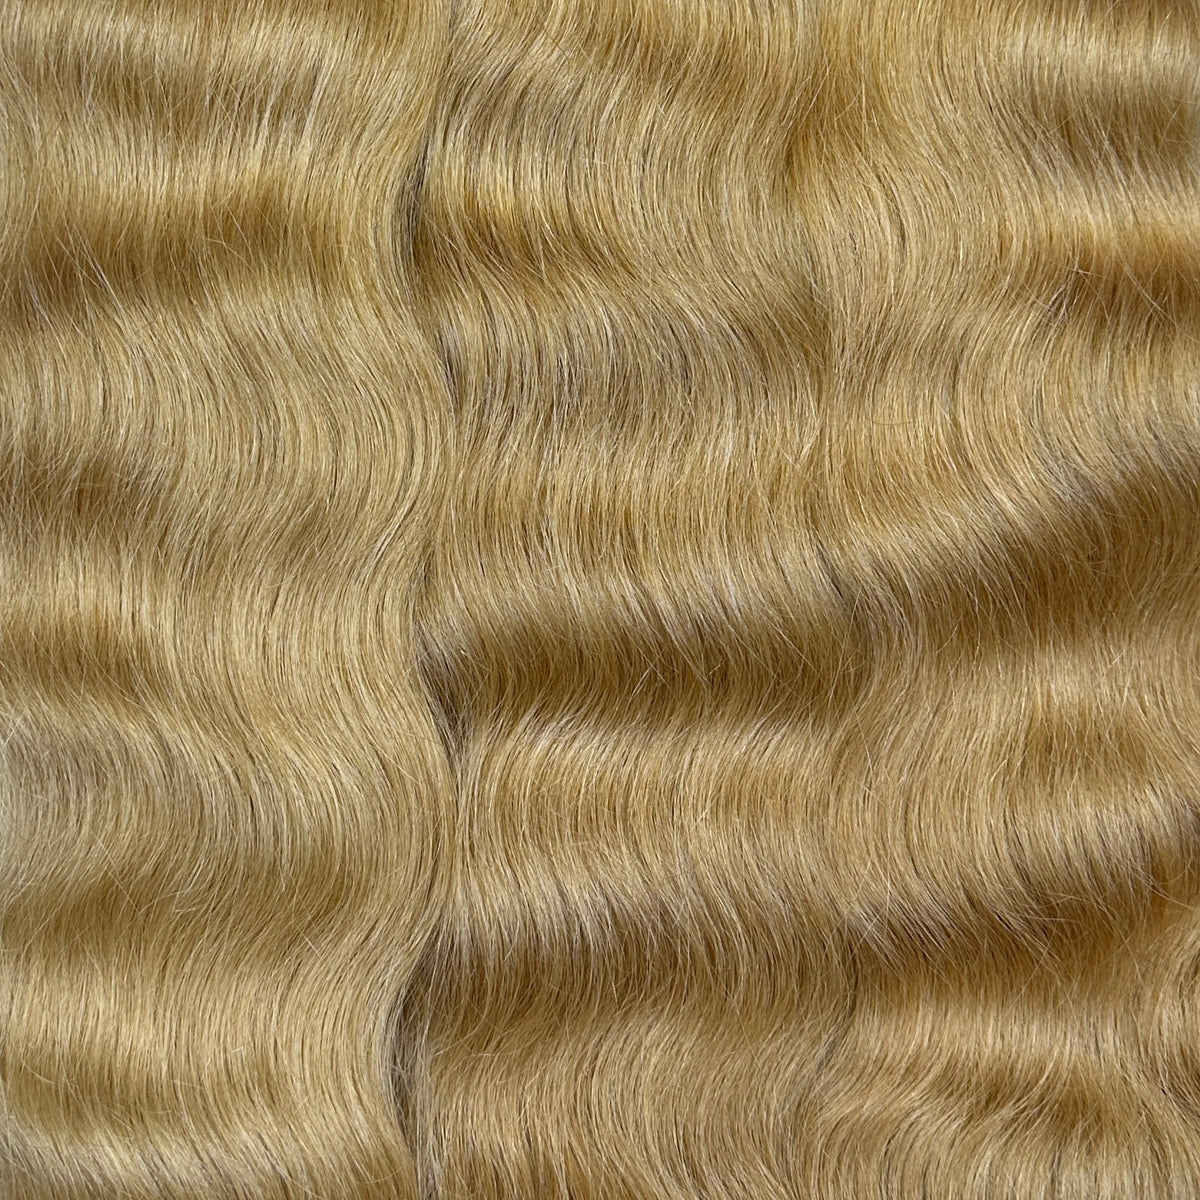 Hair in Bulk- 8.3 Warm Dark Blonde